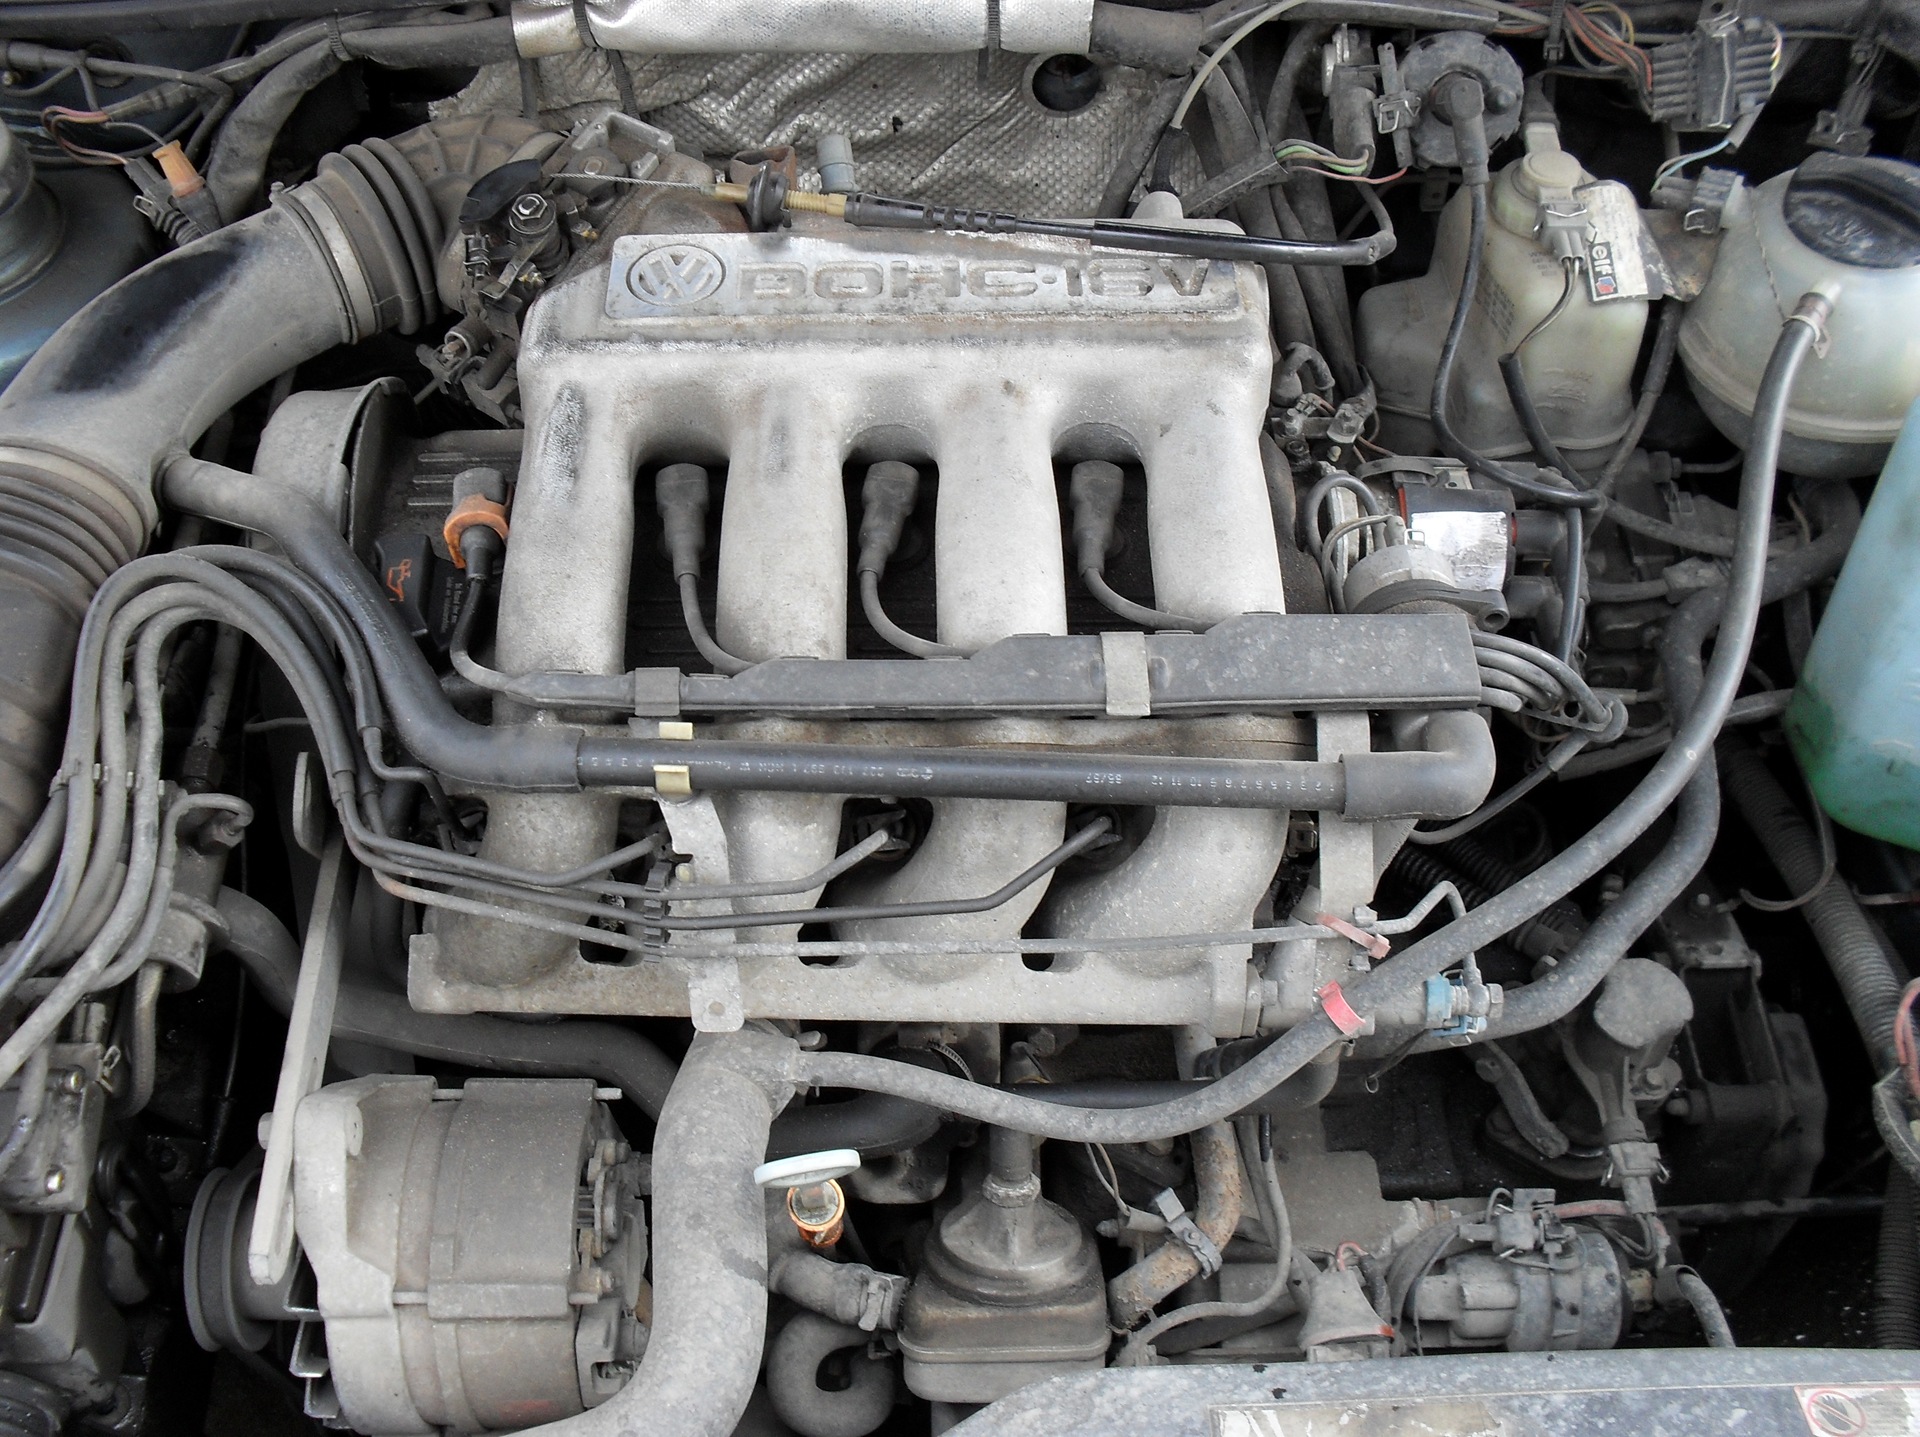 136 л купить. Passat b3 9a. VW Passat b3 9a 1.8 16v. Двигатель Фольксваген Пассат б3 2.0 16v. Двигатель 9а Пассат б3.